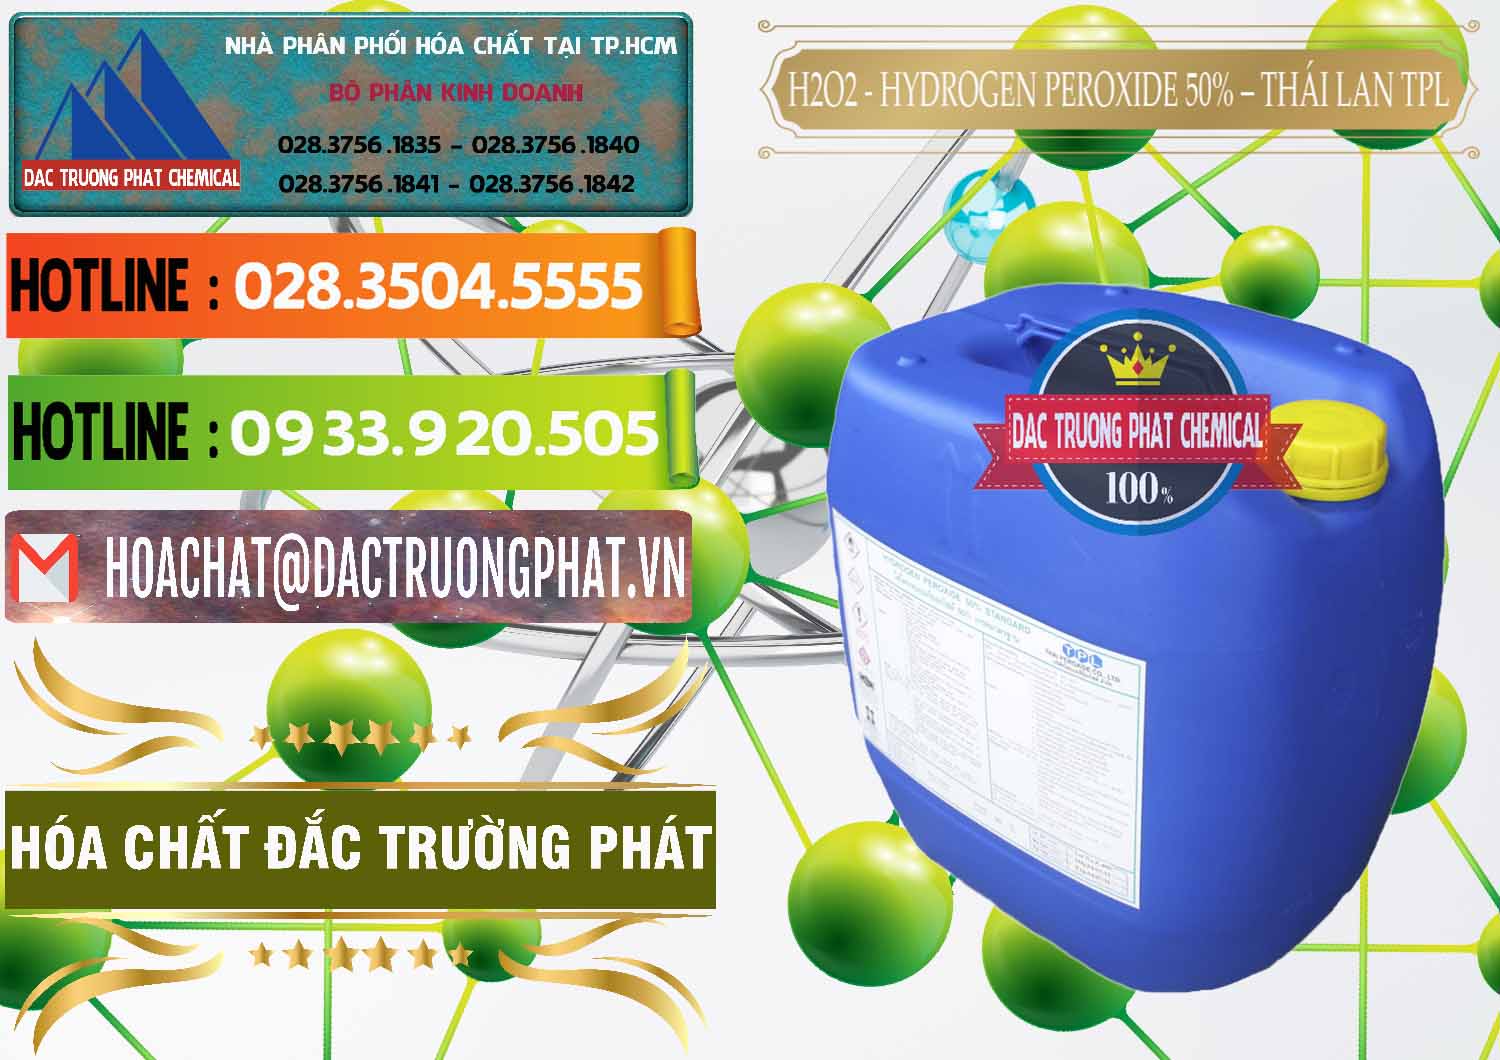 Bán ( cung cấp ) H2O2 - Hydrogen Peroxide 50% Thái Lan TPL - 0076 - Nhà cung cấp và phân phối hóa chất tại TP.HCM - cungcaphoachat.com.vn